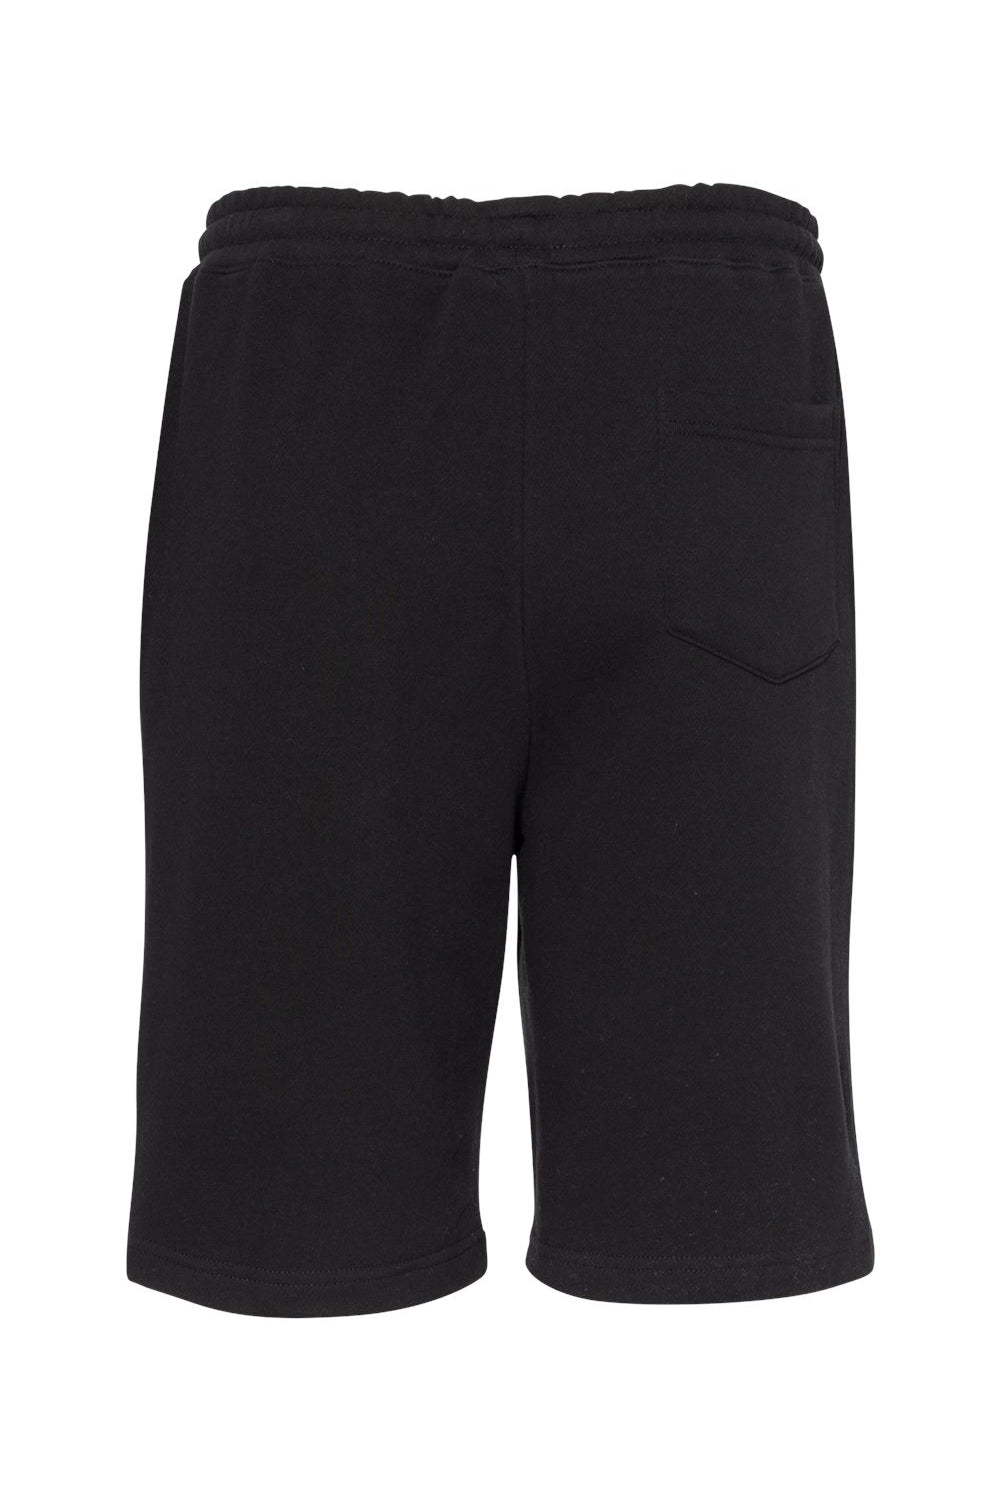 Independent Trading Co. IND20SRT Mens Fleece Shorts w/ Pockets Black Flat Back